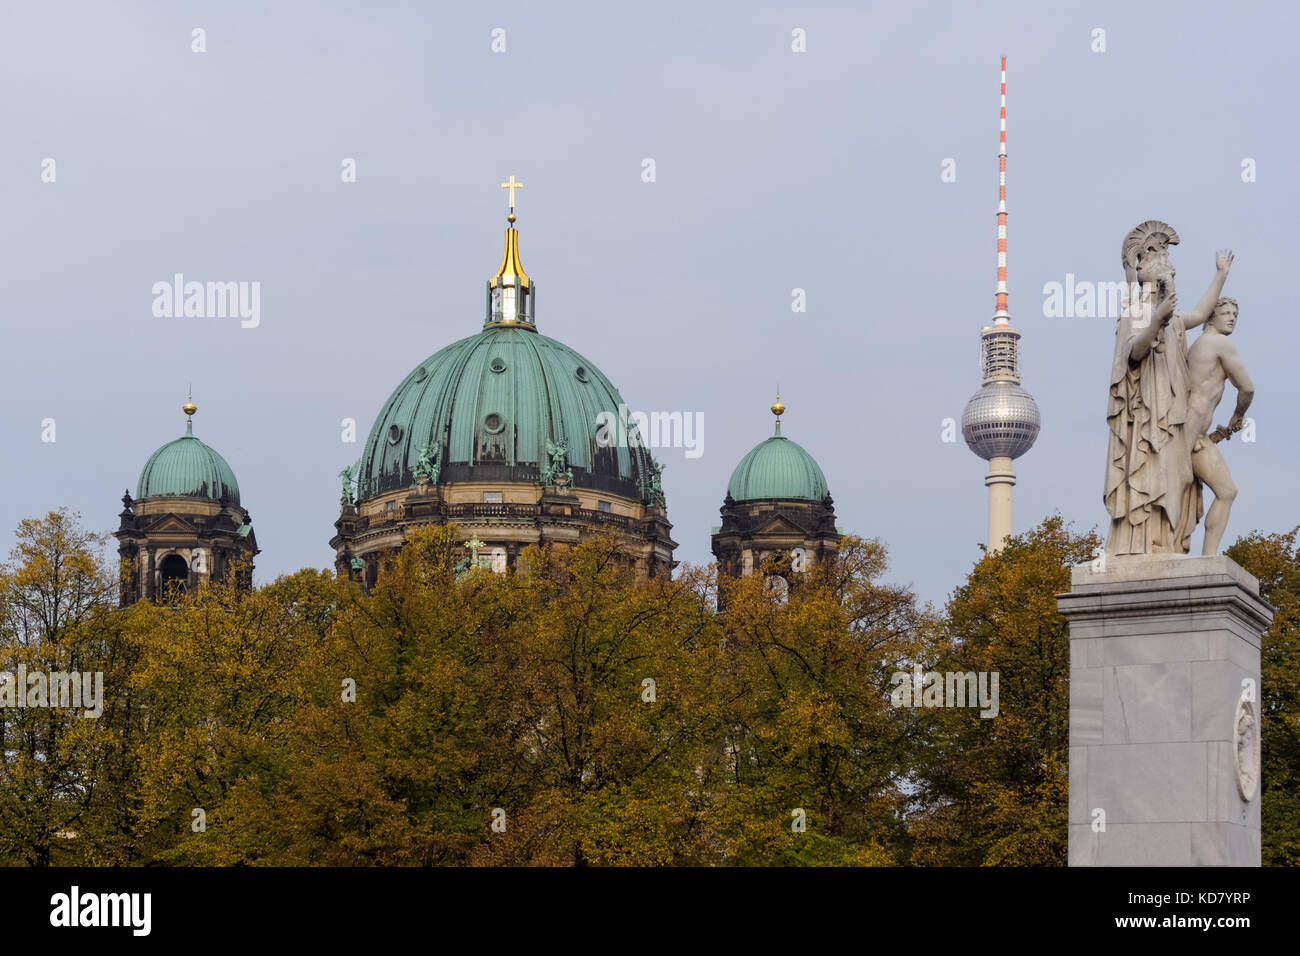 La Cathédrale de Berlin, la tour de télévision et le pont Schlossbrücke vu au-dessus du parc Lustgarten à Berlin, Allemagne Banque D'Images